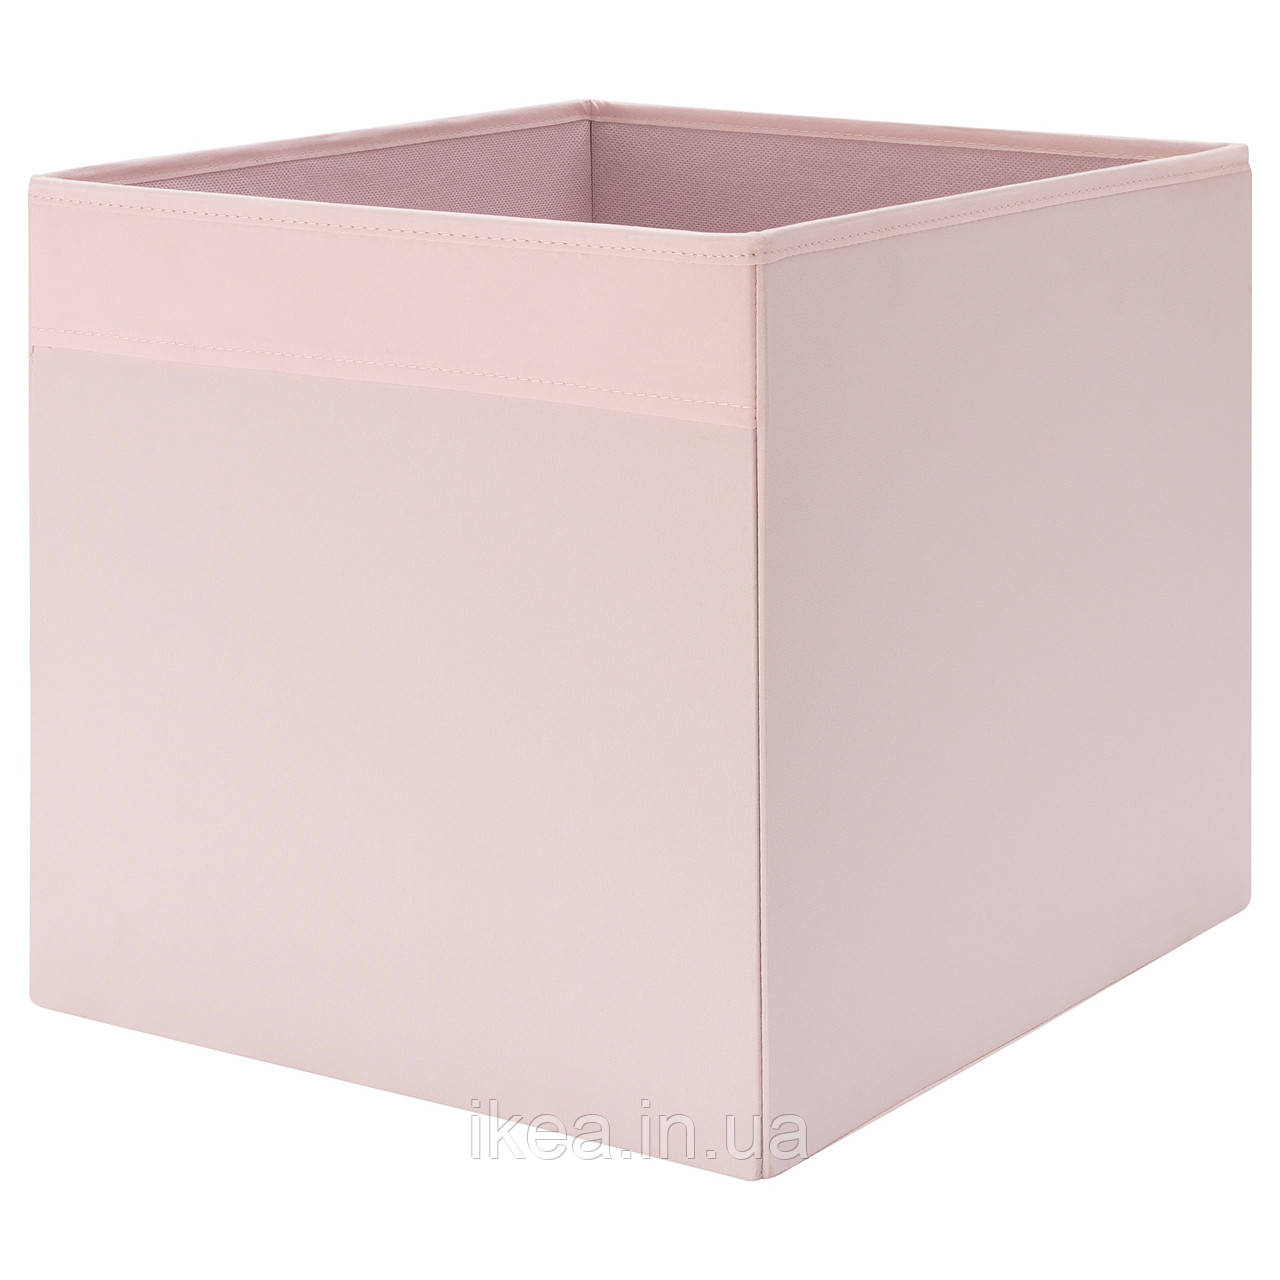 Оксамитова коробка IKEA DRÖNA DRONA 33x38x33 см рожевий органайзер для зберігання речей ІКЕА ДРЕНА